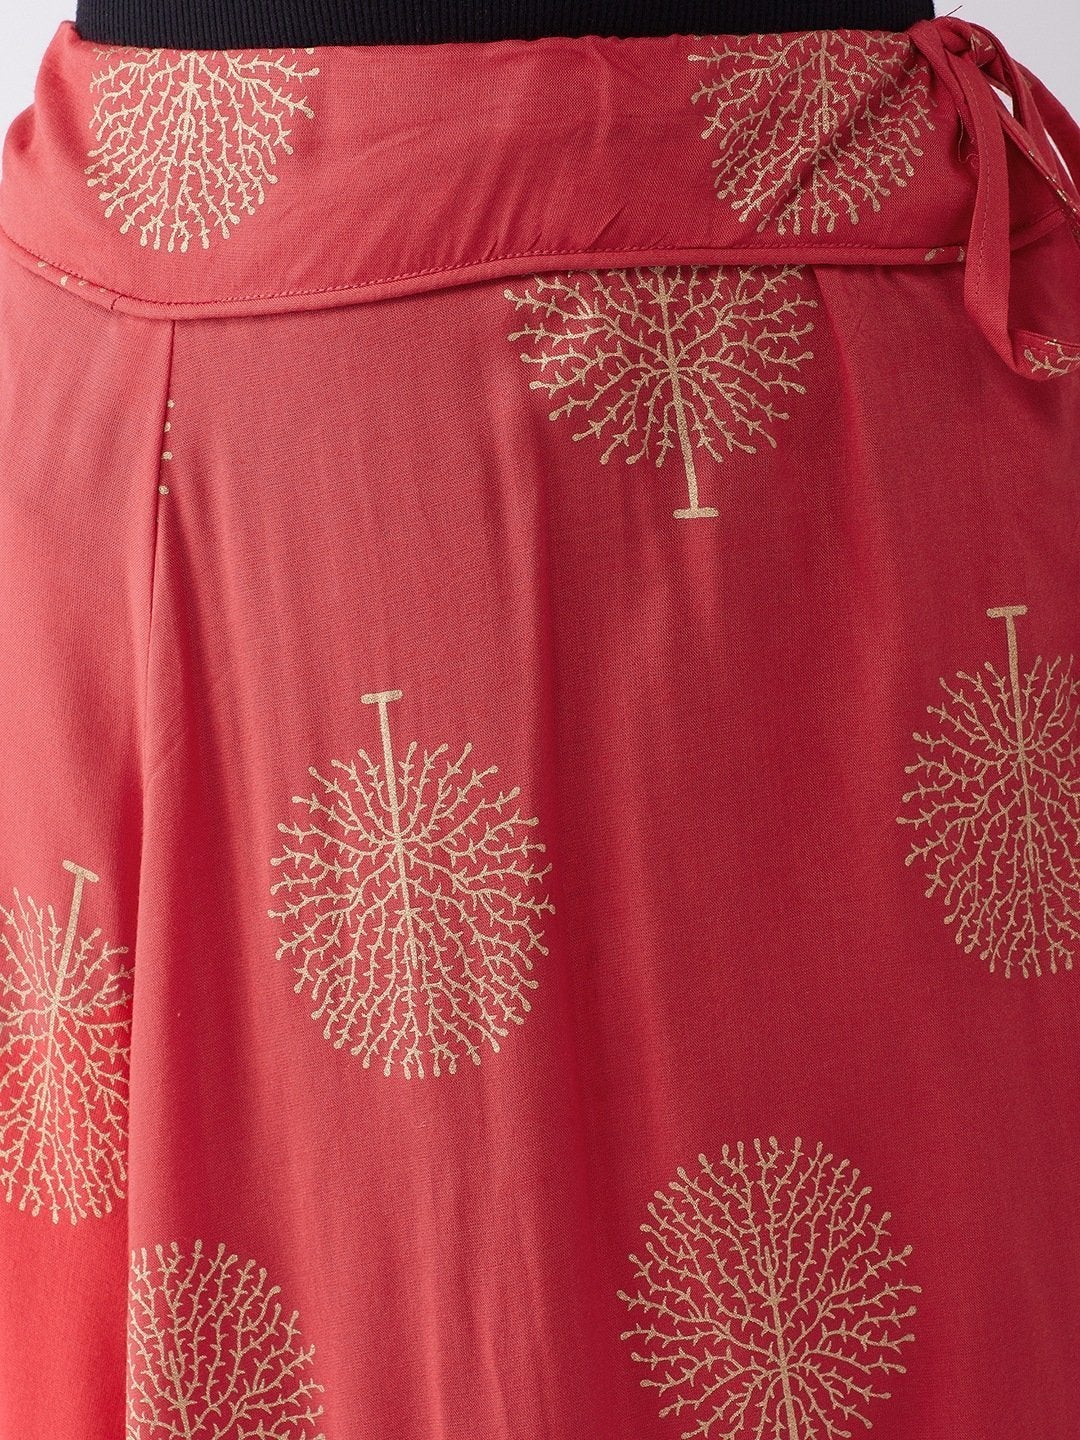 Women's Red Gold Print Skirt - InWeave